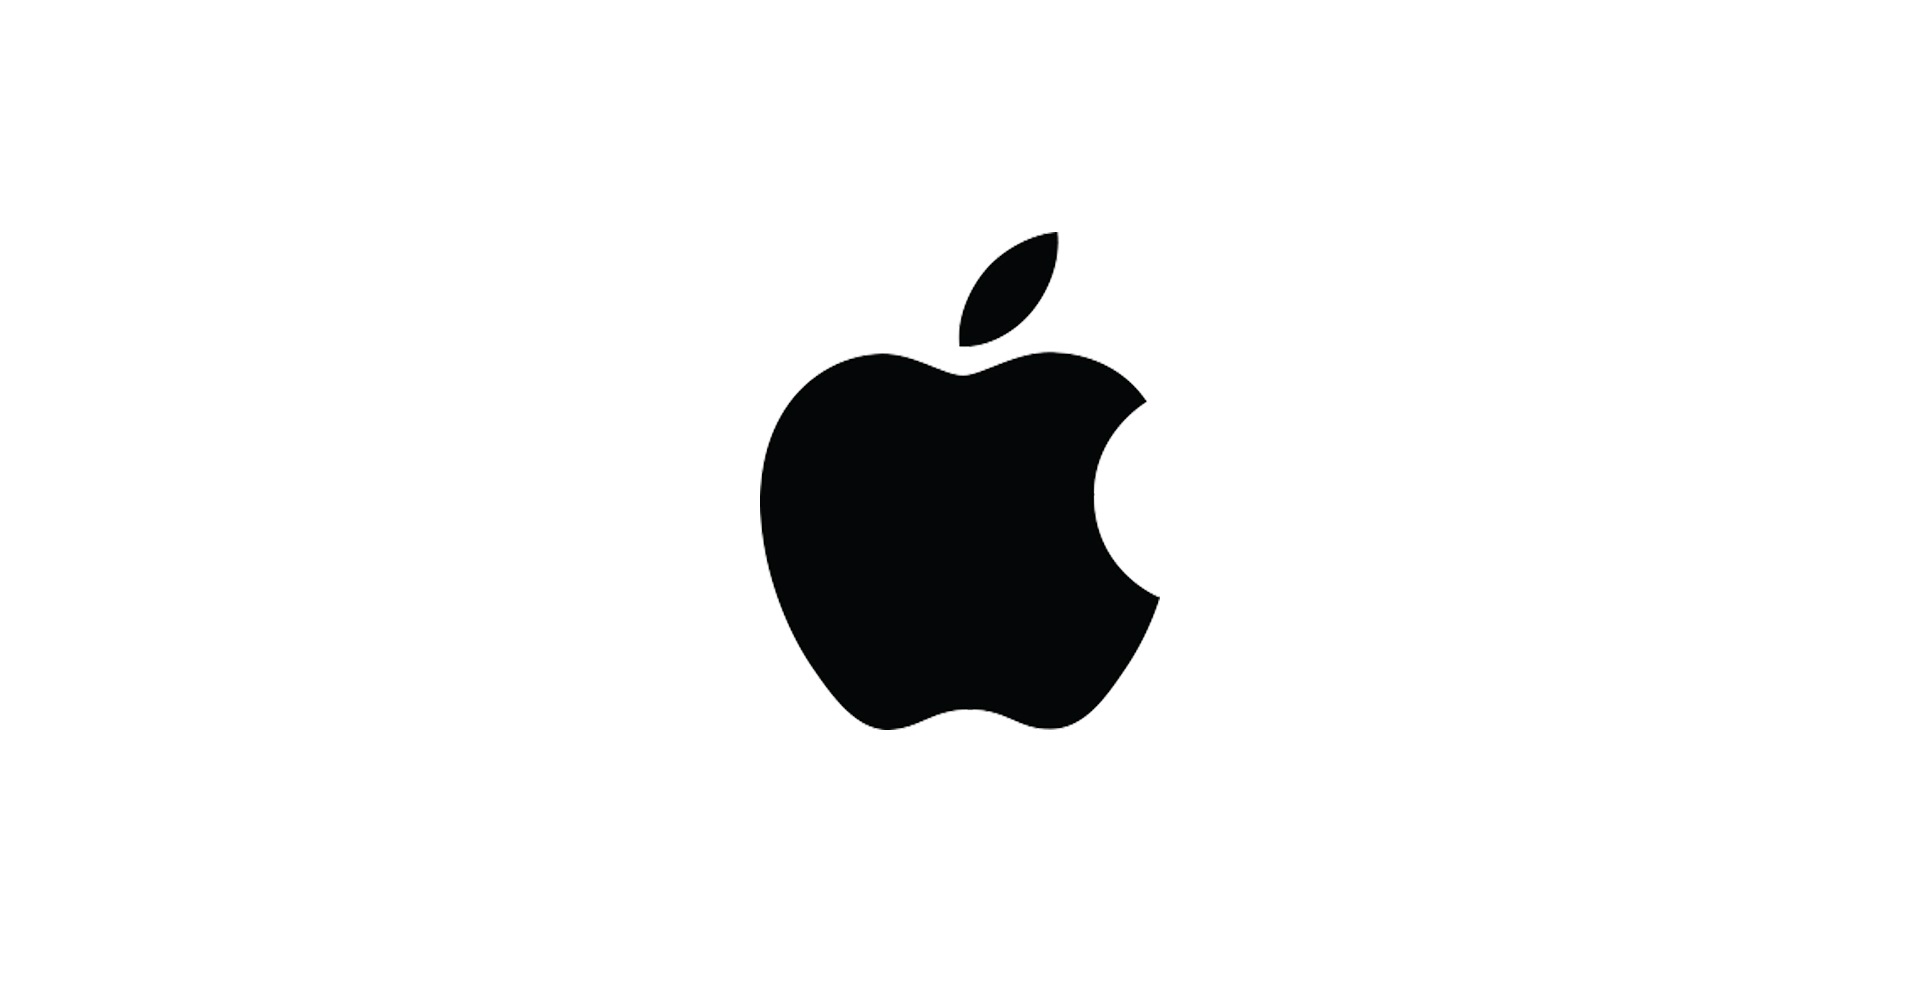 ชิป Apple M2 ที่ผลิตด้วยเทคโนโลยี 4nm อาจเปิดตัวช่วงกลางปี 2022